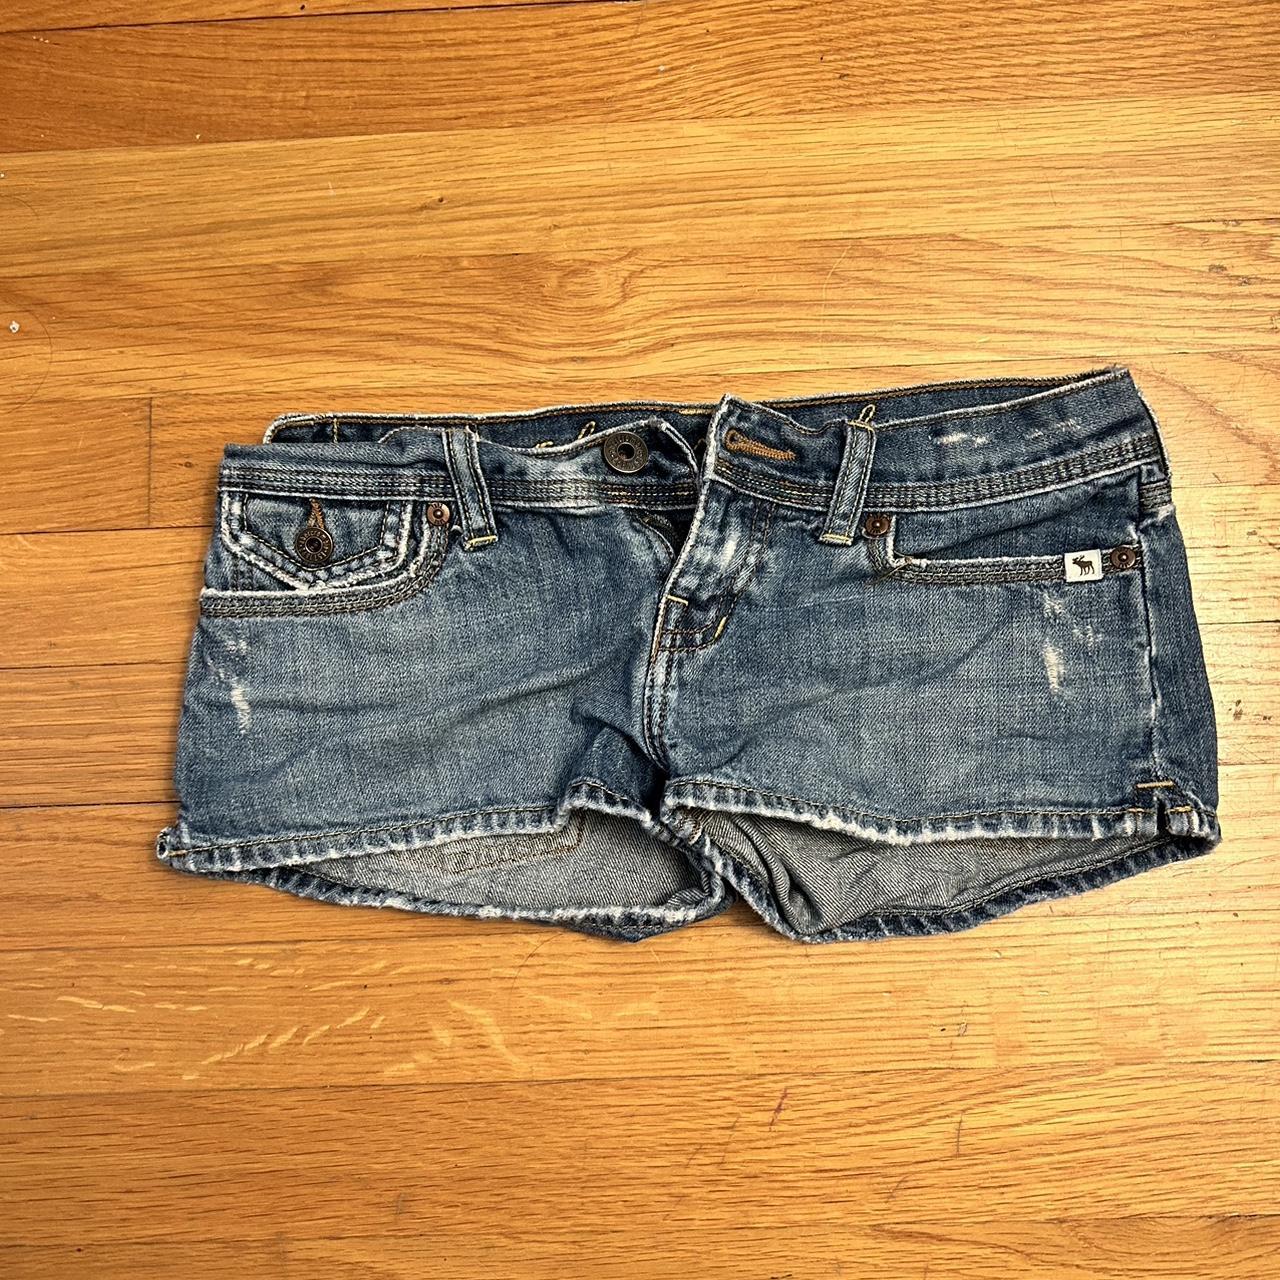 Vintage Super Low-rise Abercrombie Jean Shorts size:... - Depop